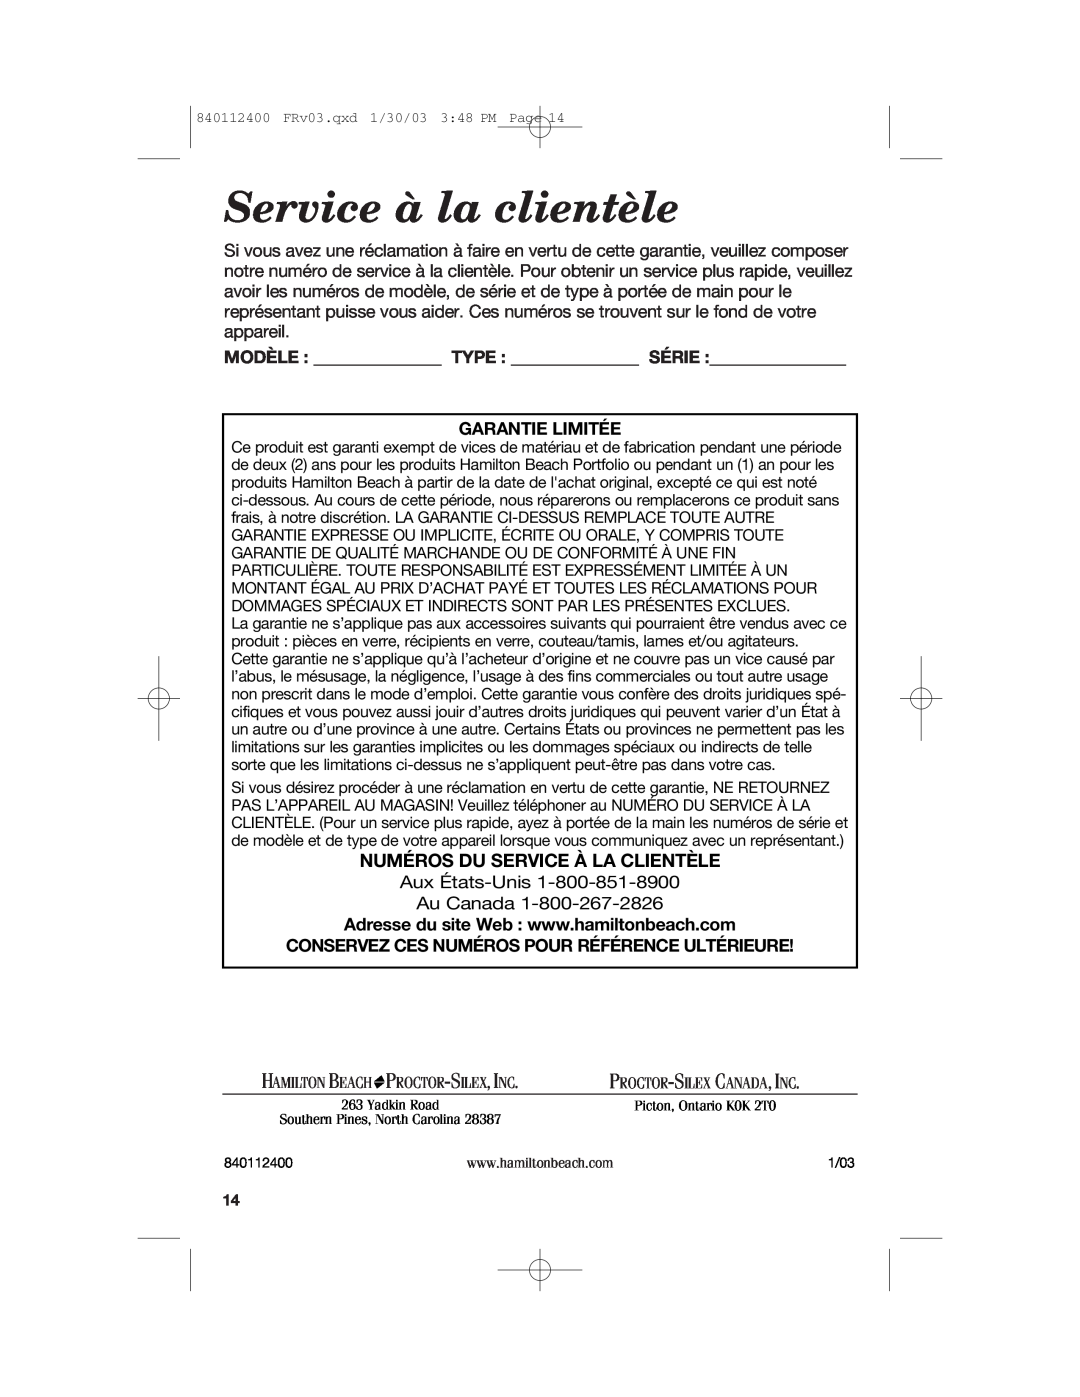 Hamilton Beach 68120 manual Service à la clientèle, Numéros Du Service À La Clientèle, Modèle Type Série Garantie Limitée 